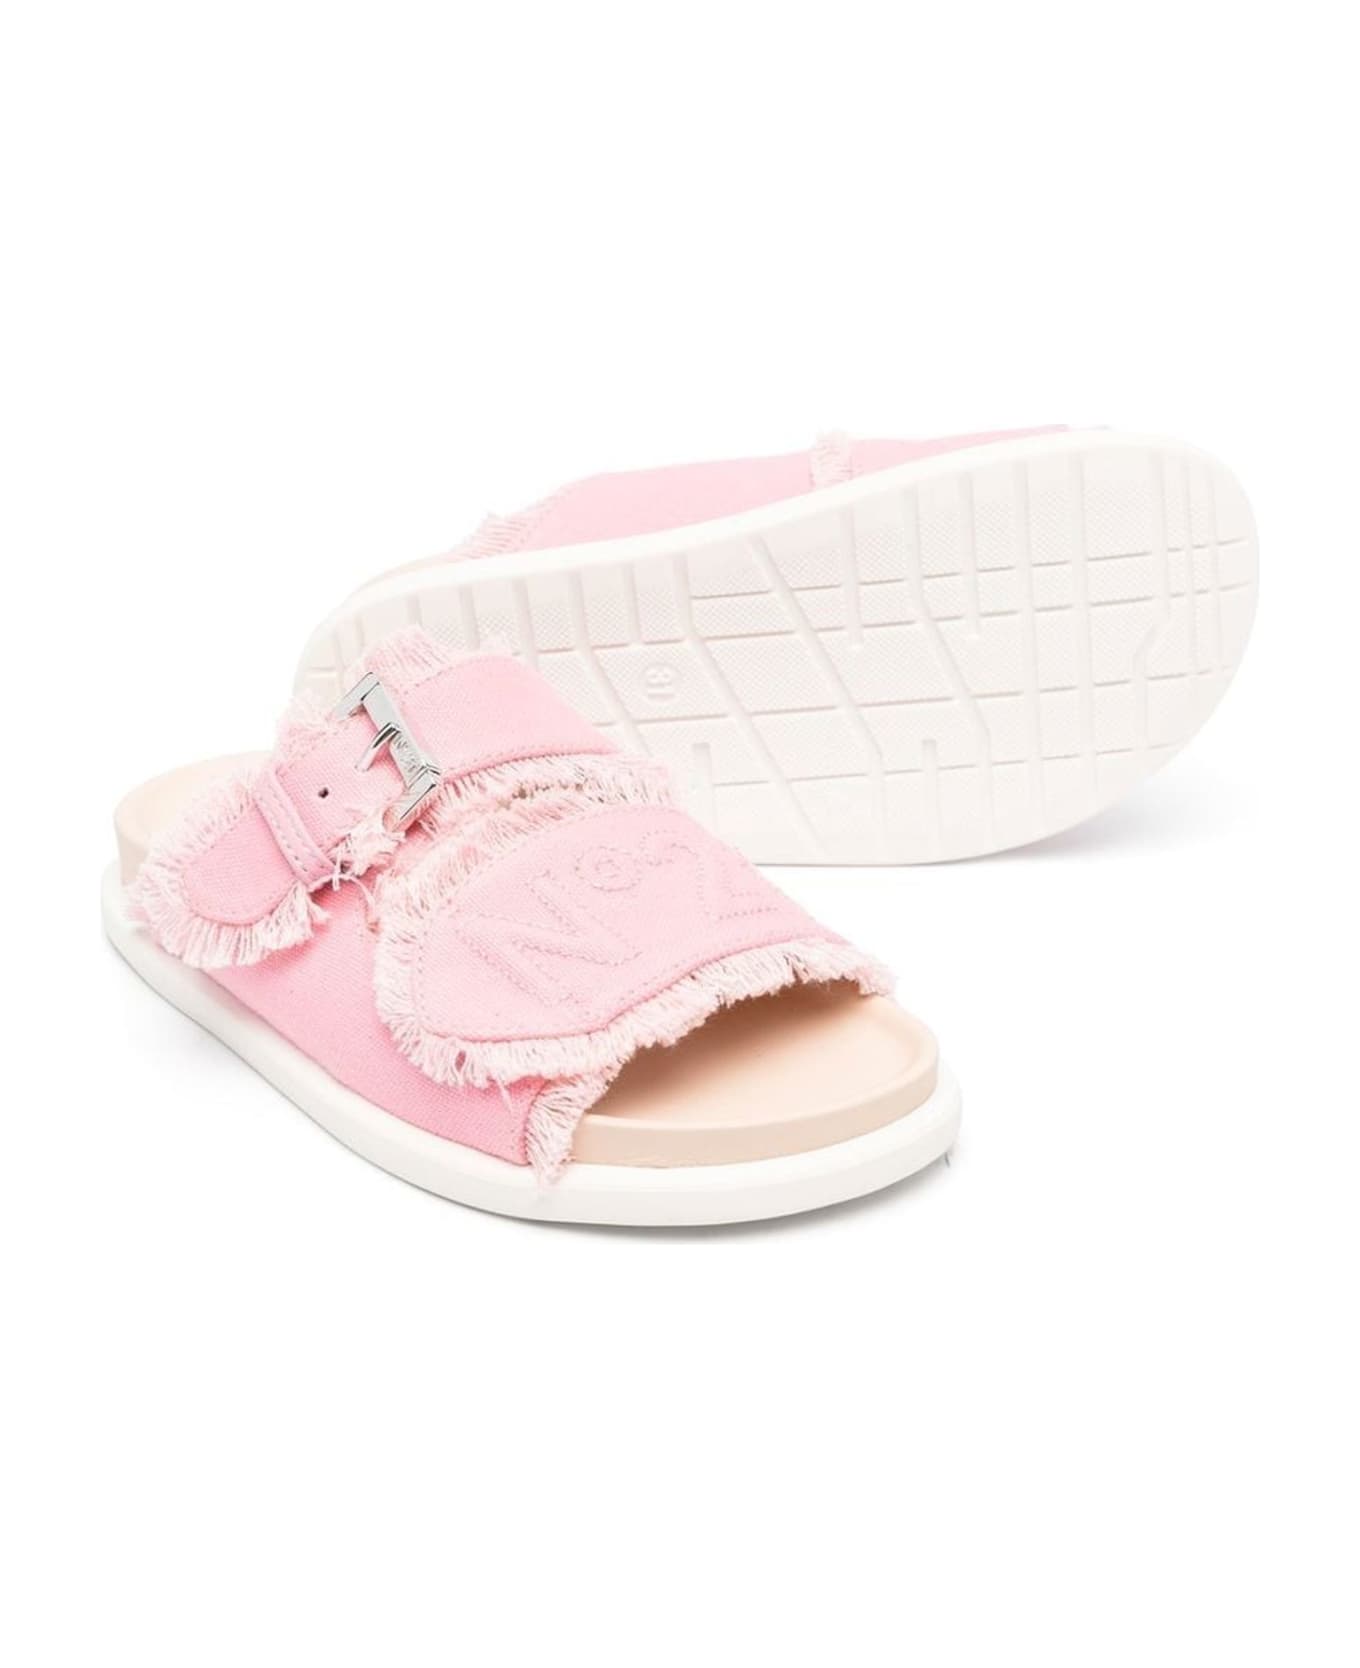 N.21 N°21 Sandals Pink - Pink シューズ